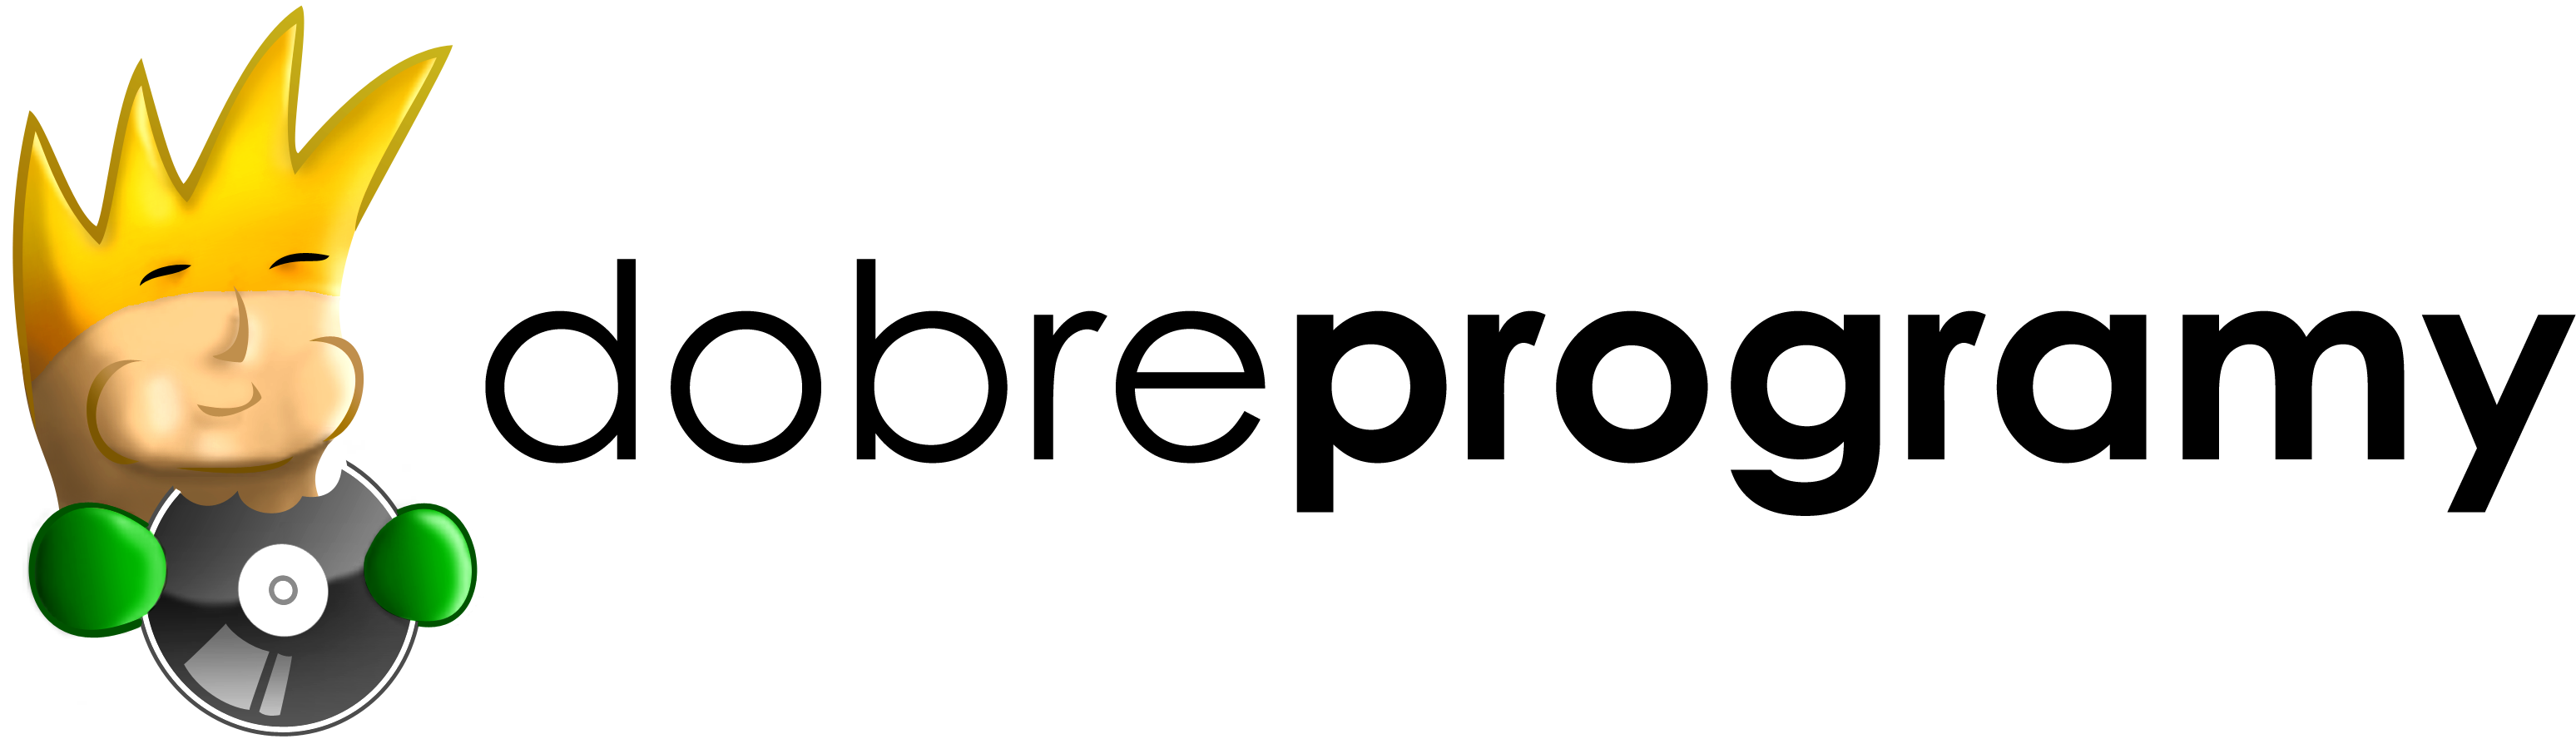 Dobreprogramy logo